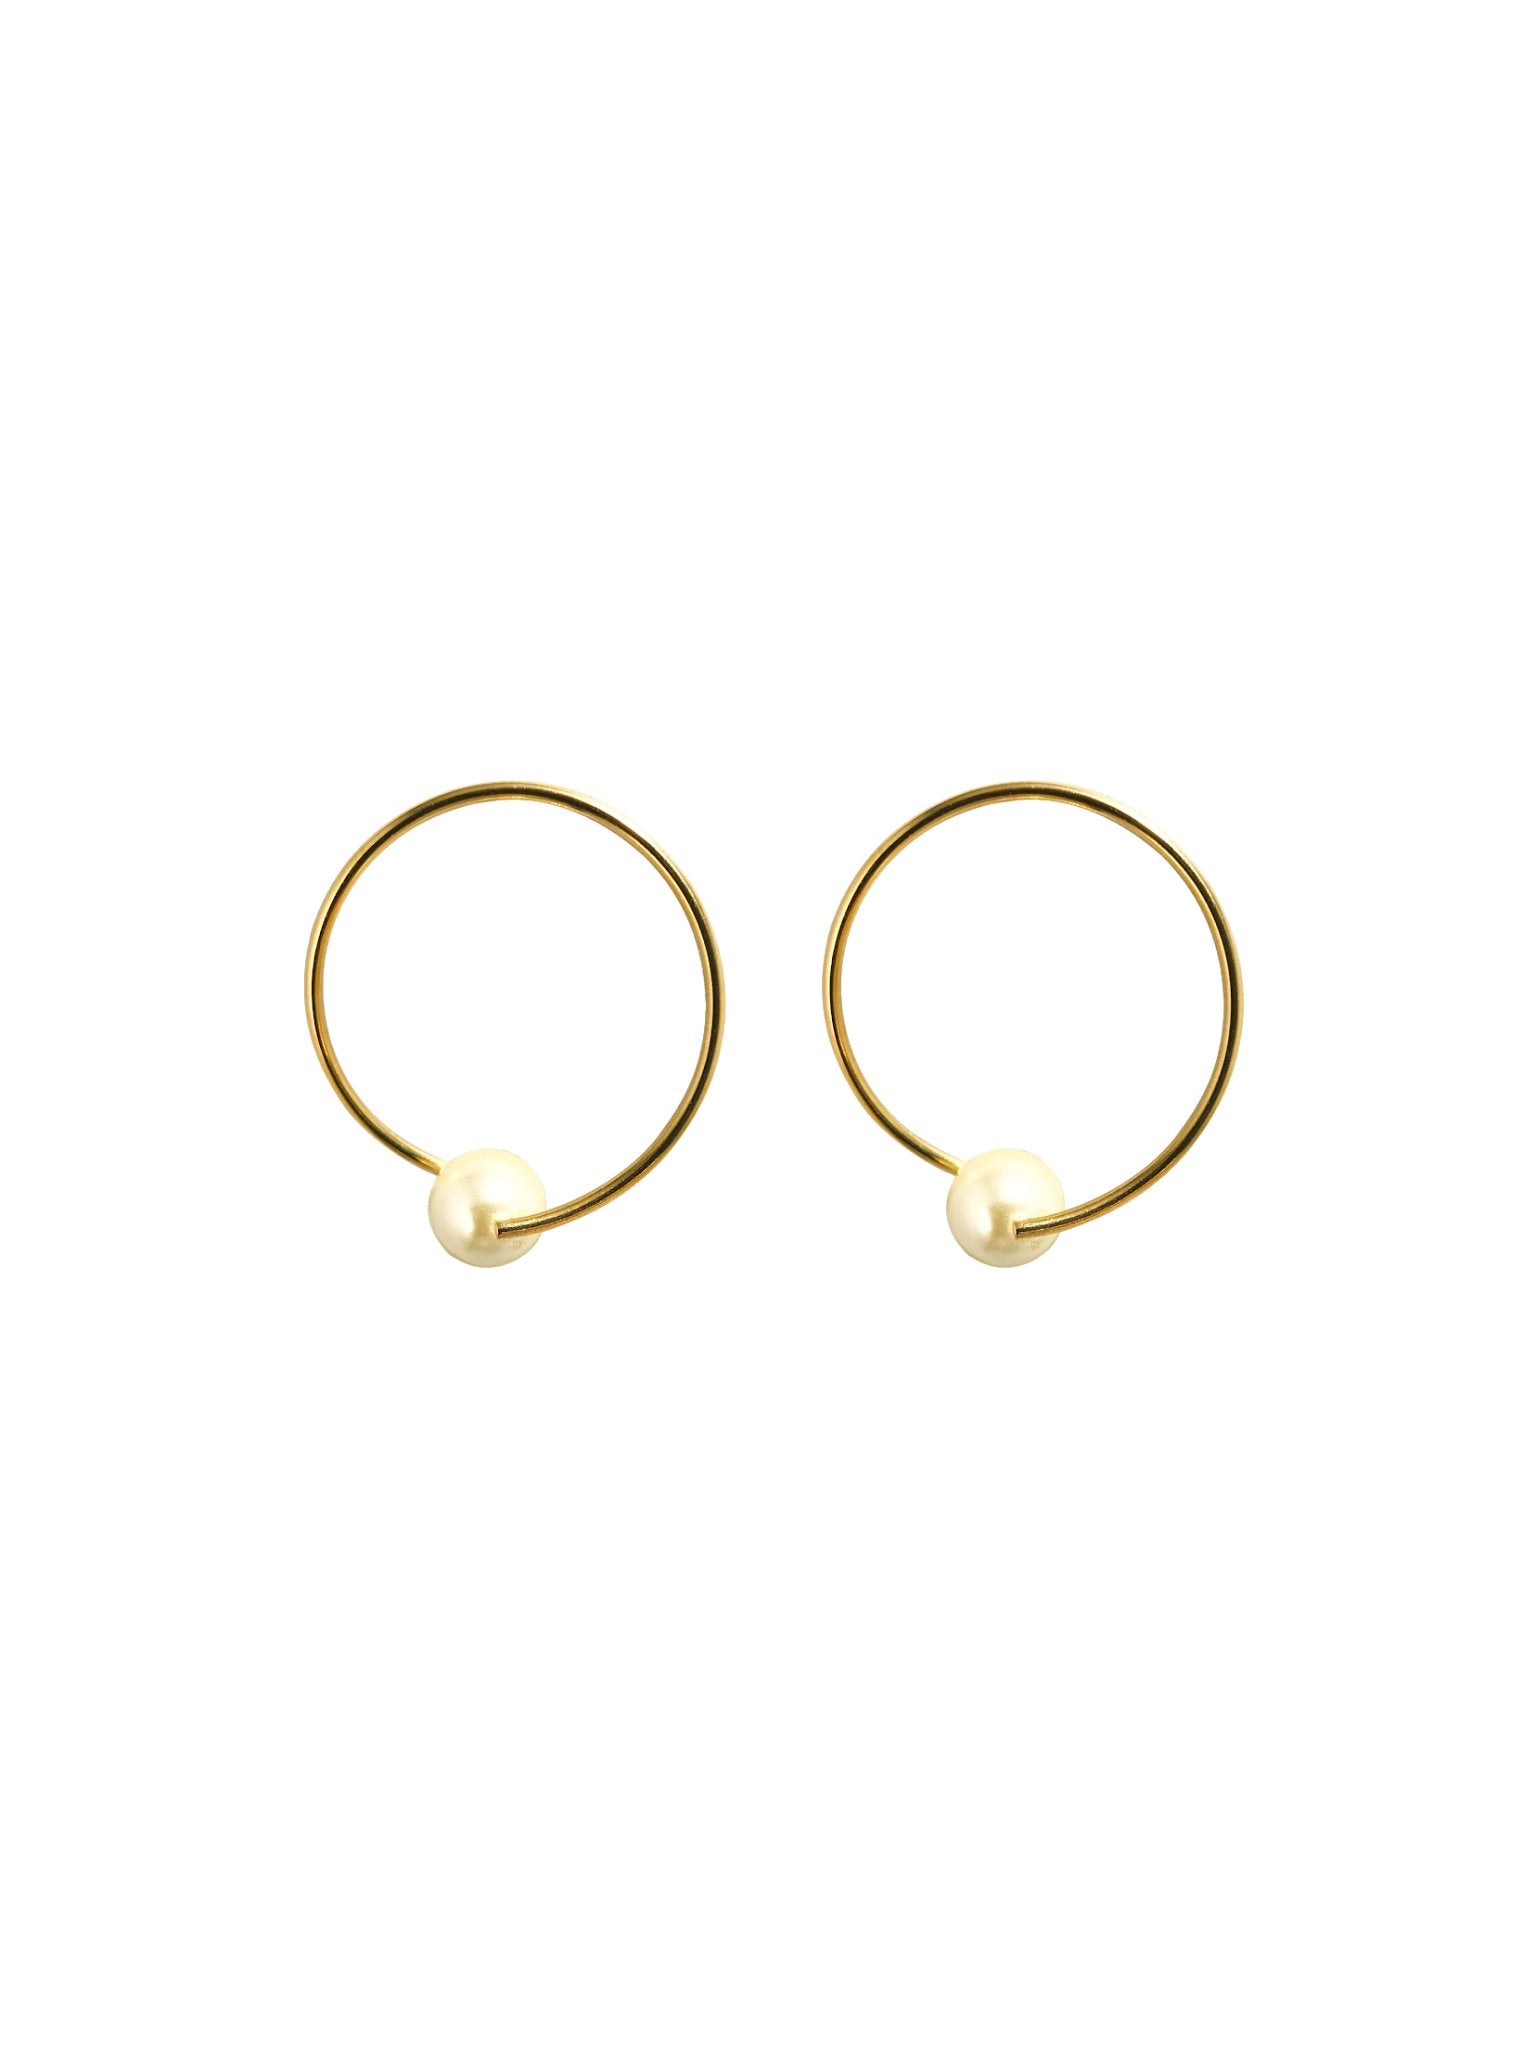 Perla Frontway Hoops - NOA Jewels - Earrings